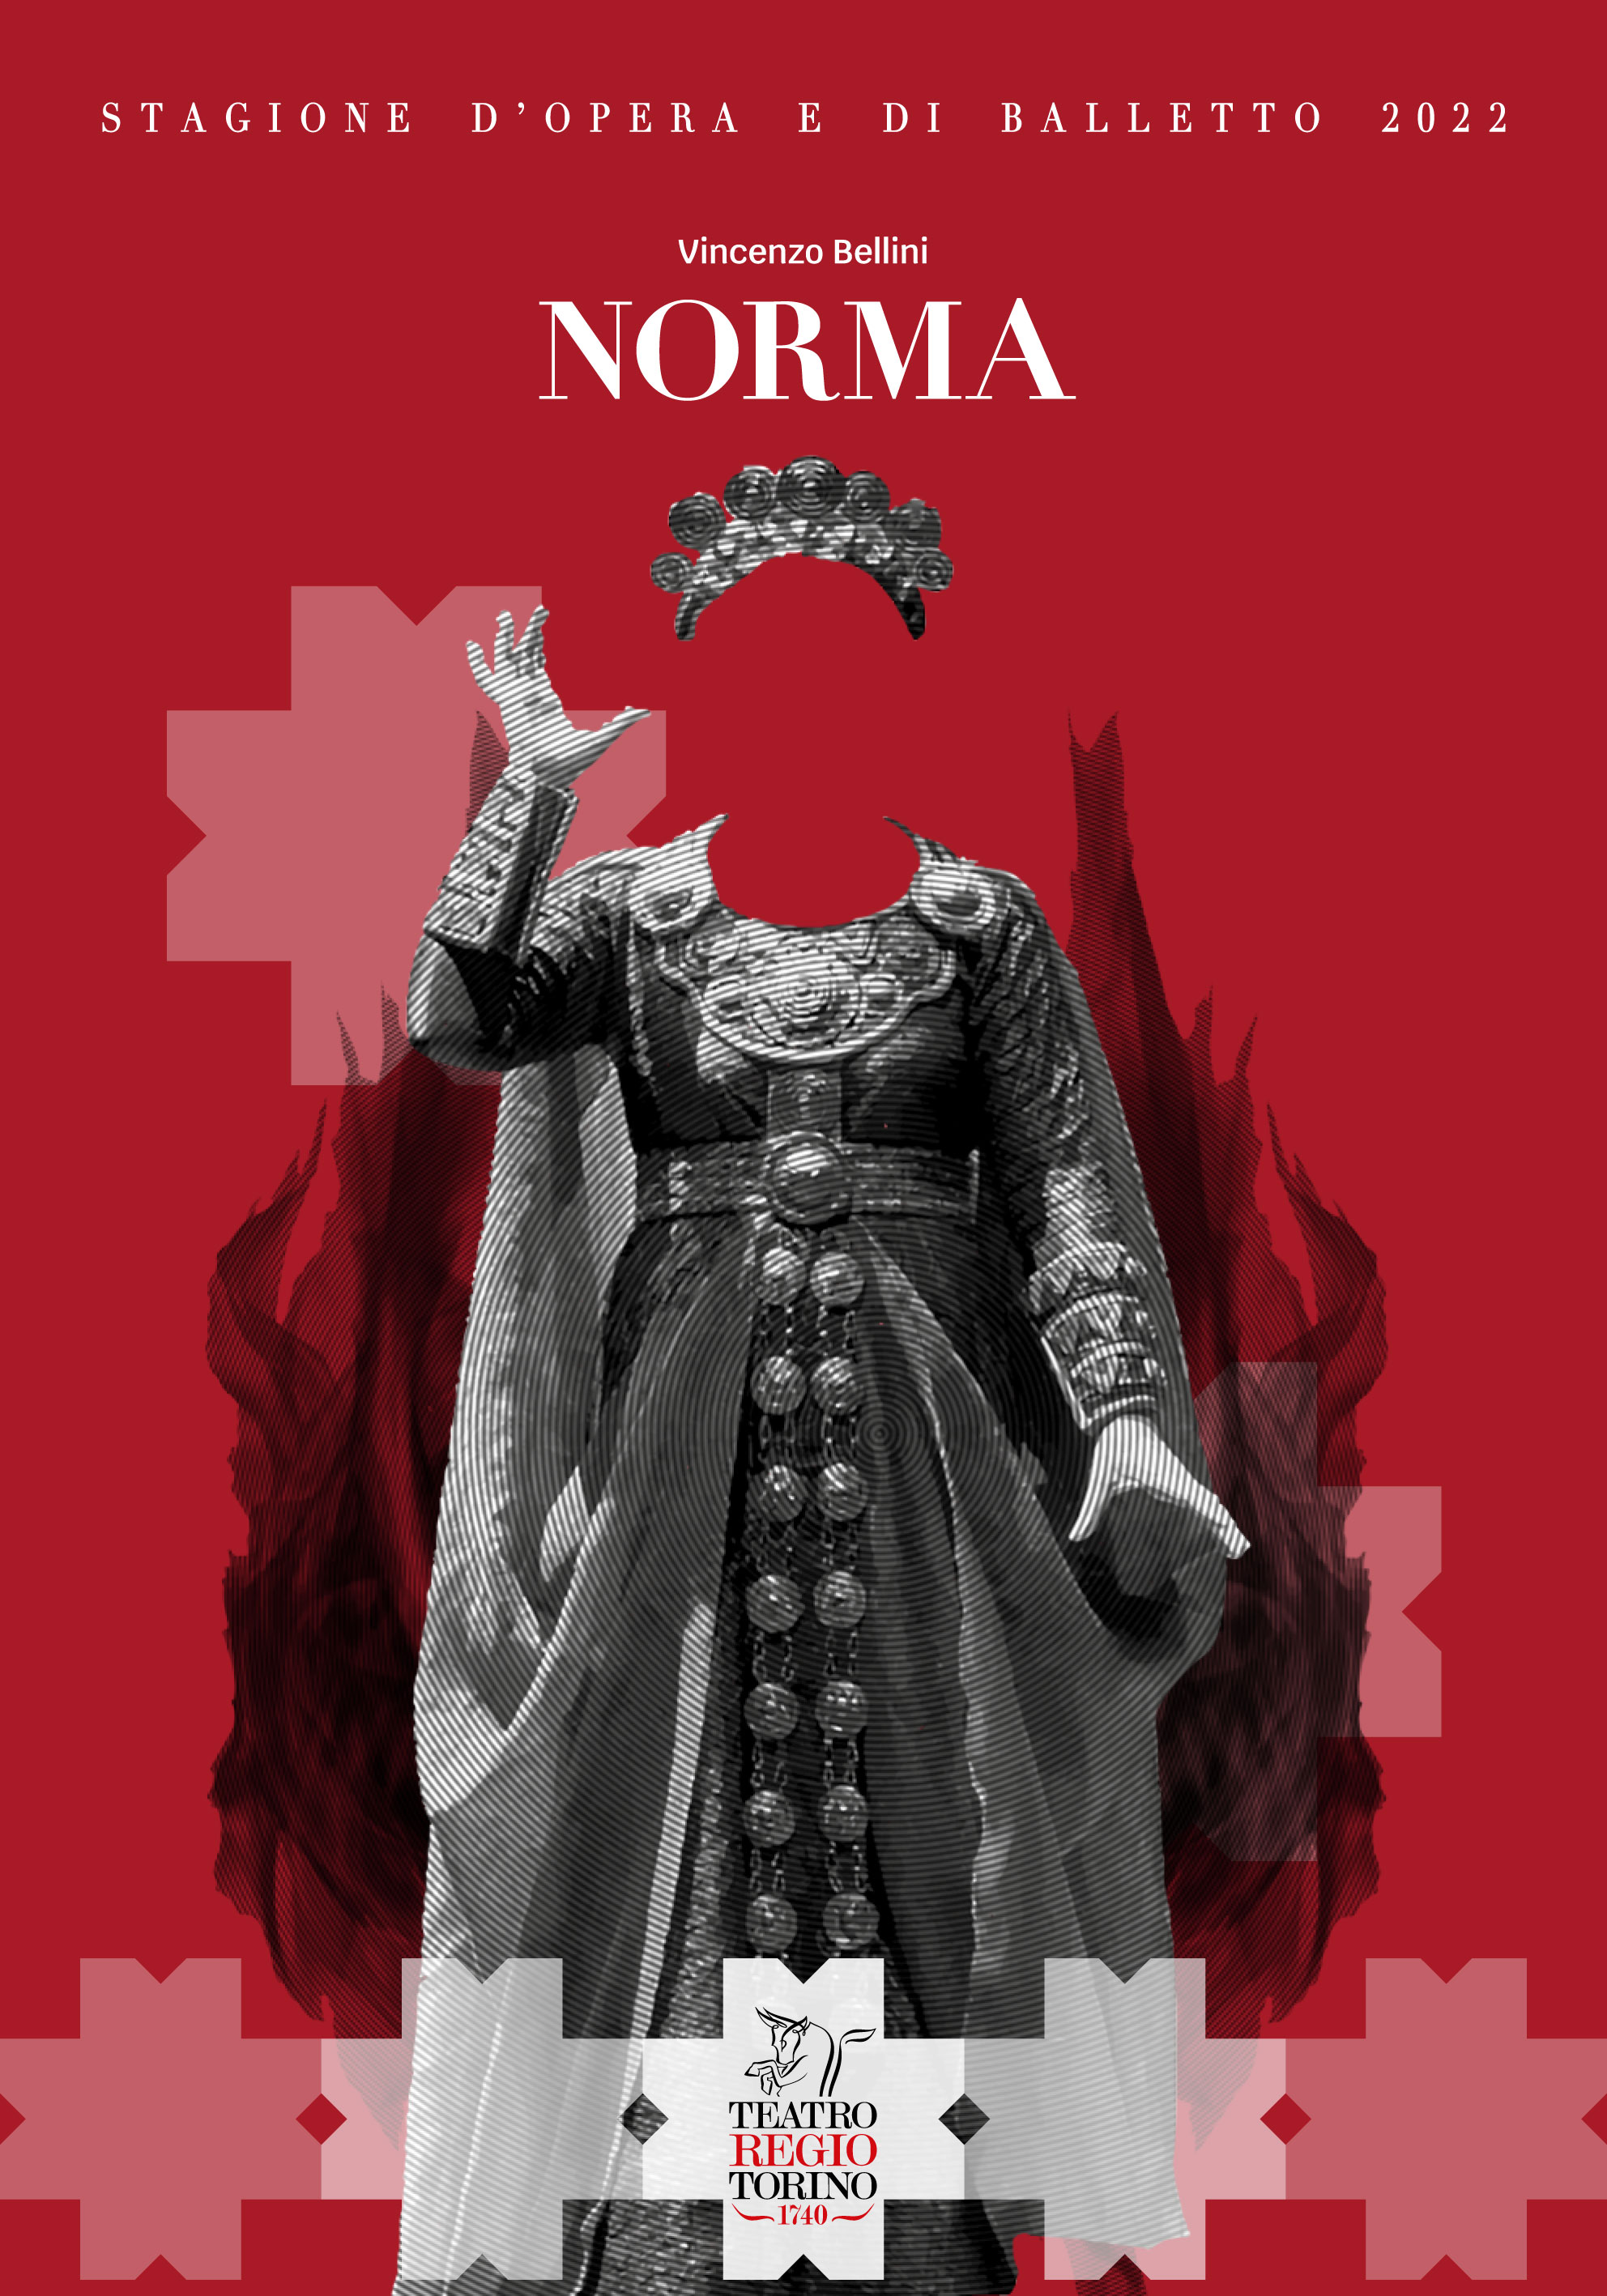 Copertina per il volume su Norma